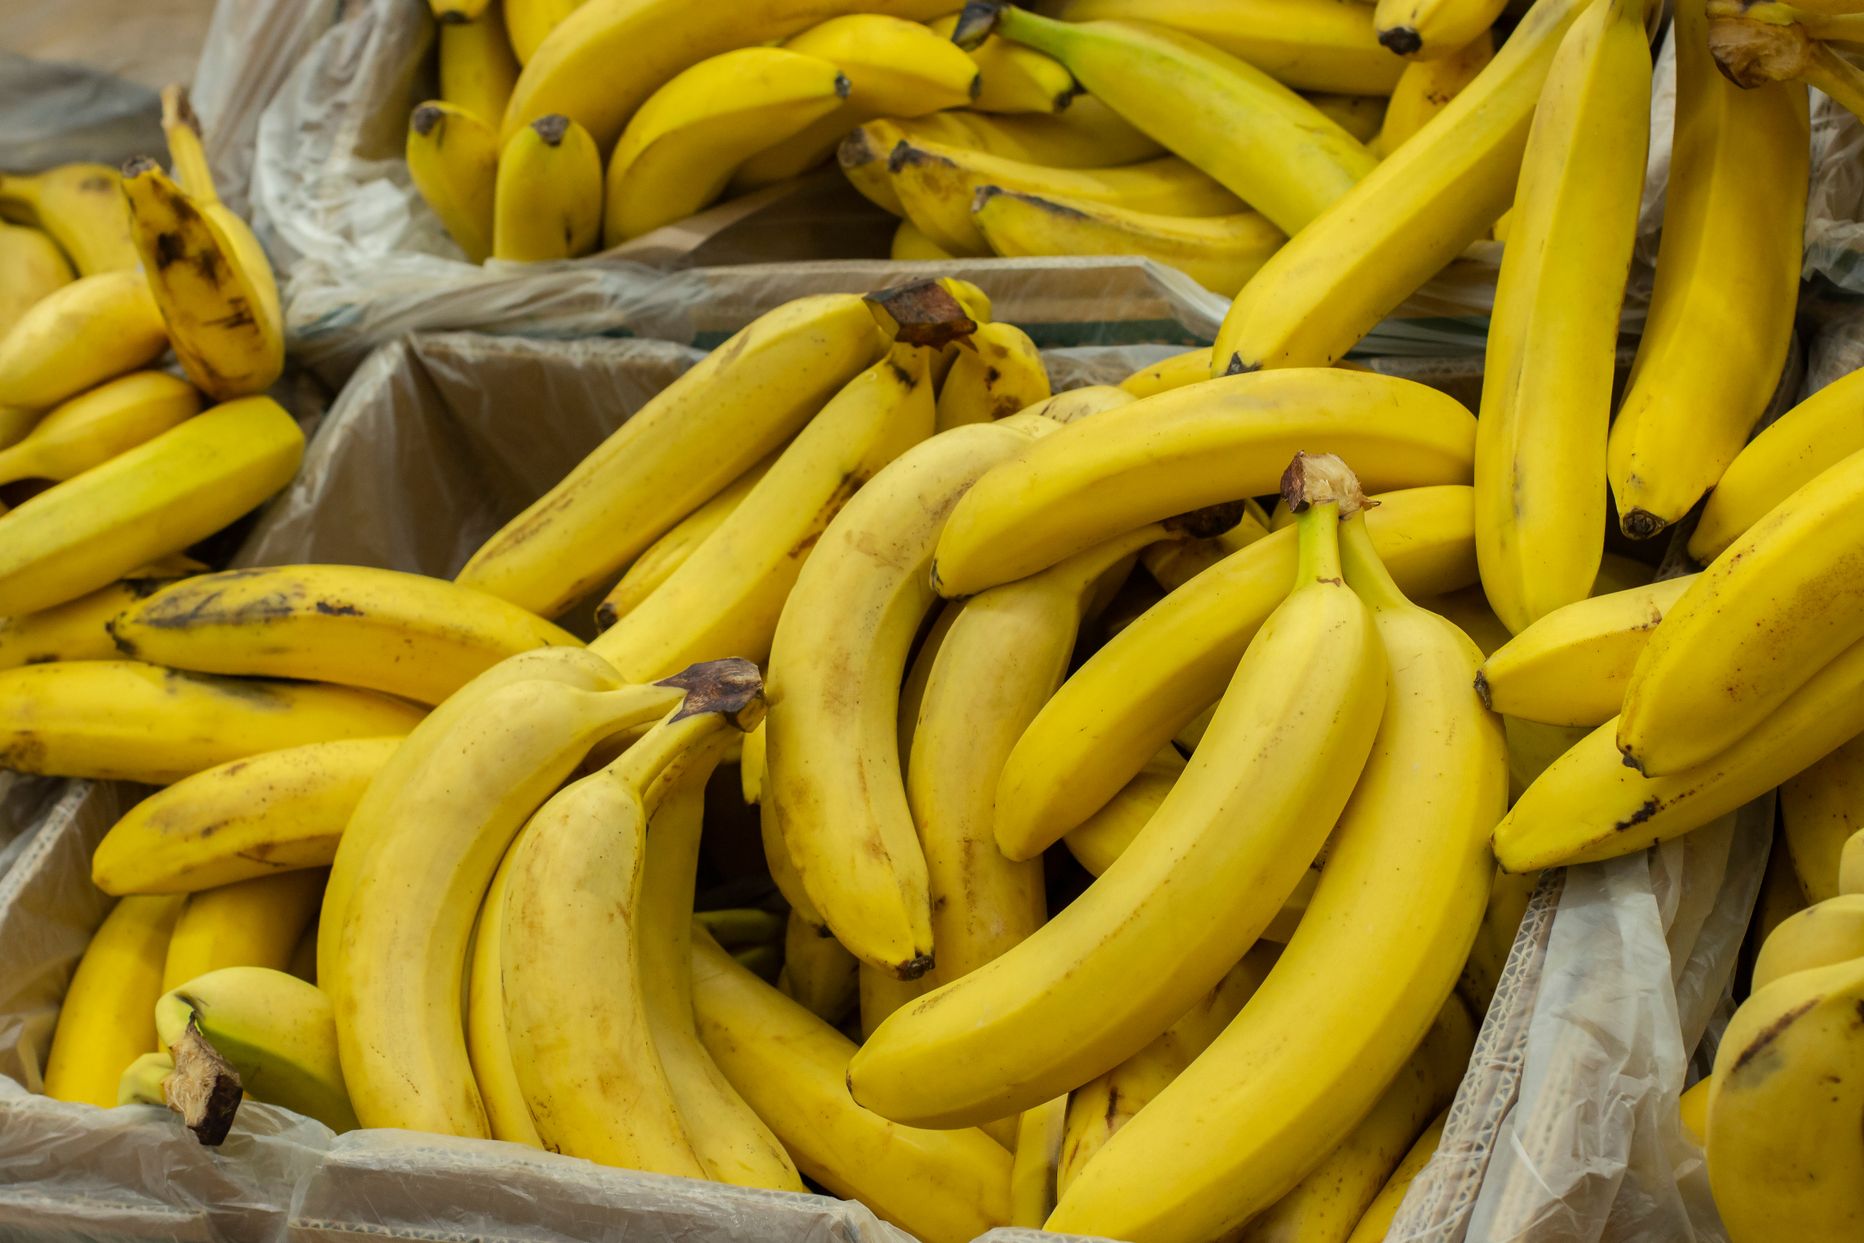 Бананы в супермаркете. Иллюстративный снимок.